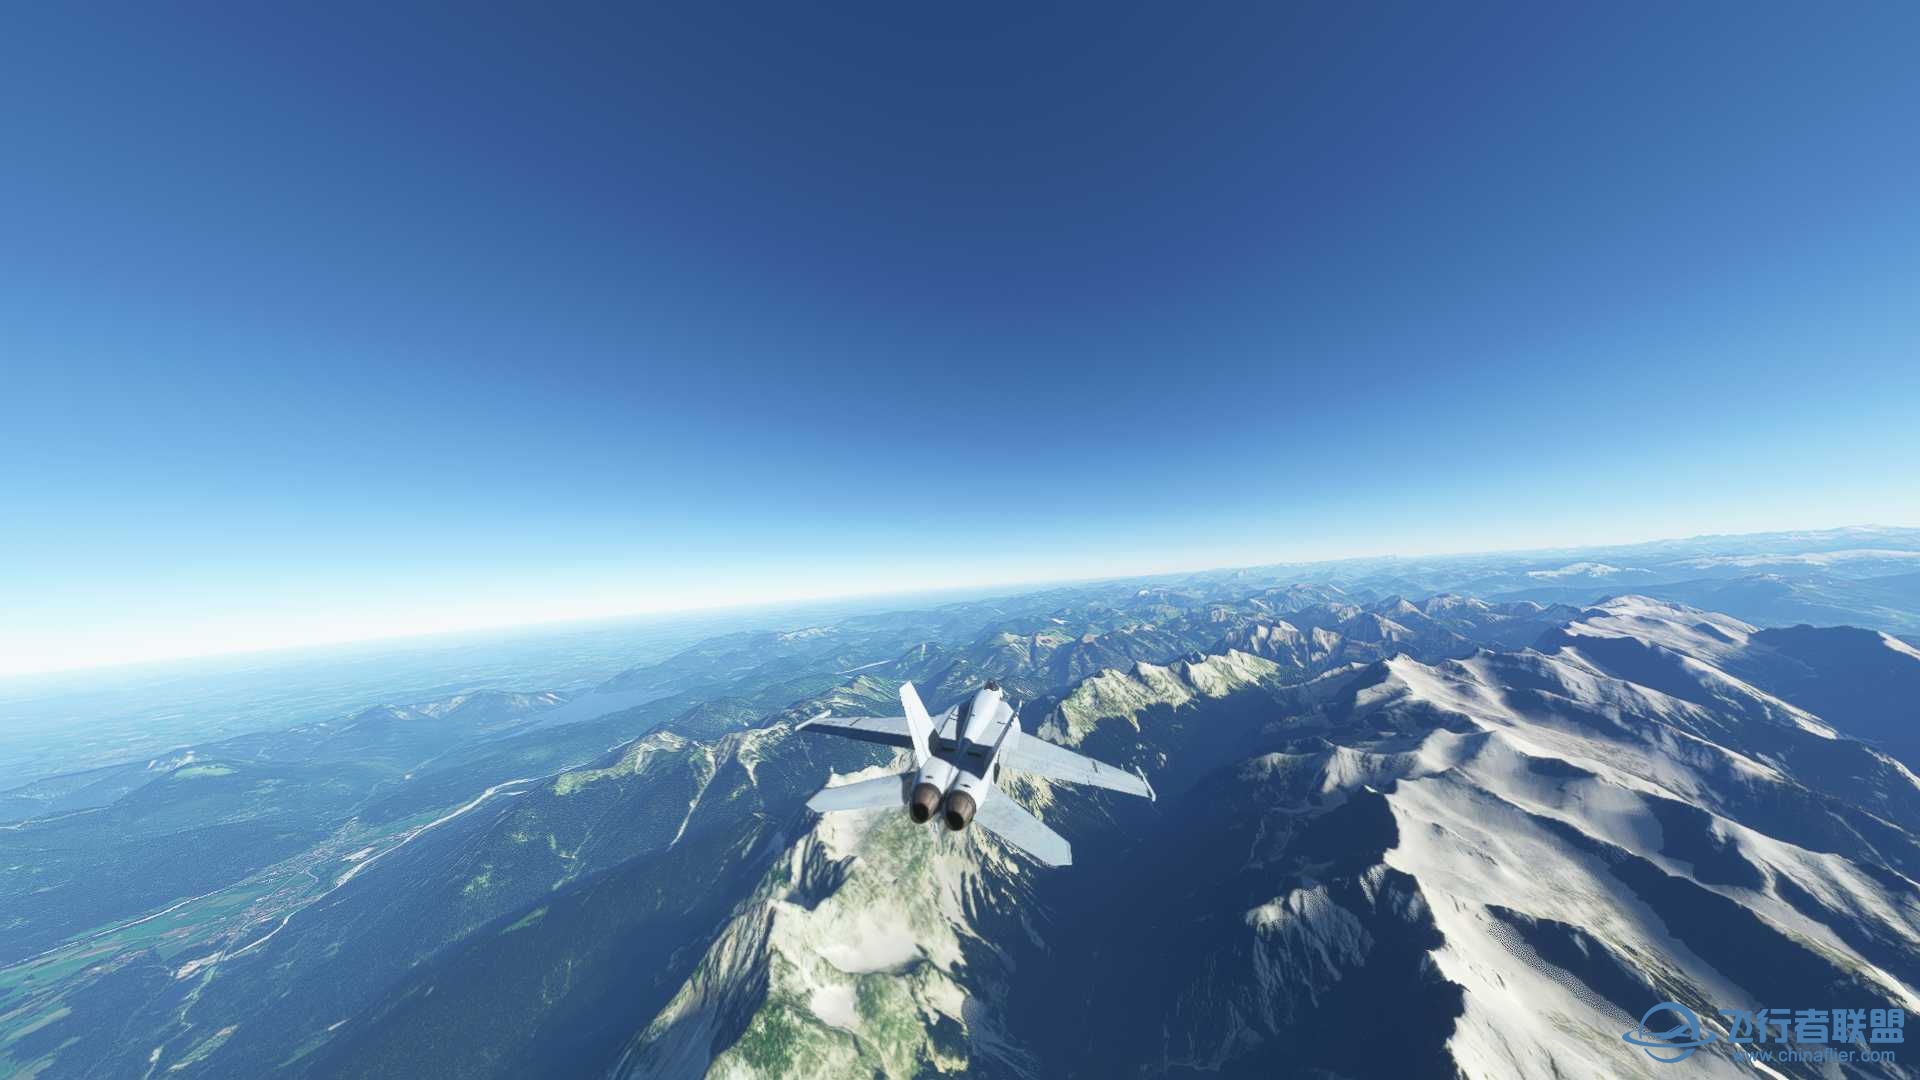 阿尔卑斯山脉附近飞行无法进行游戏-5880 